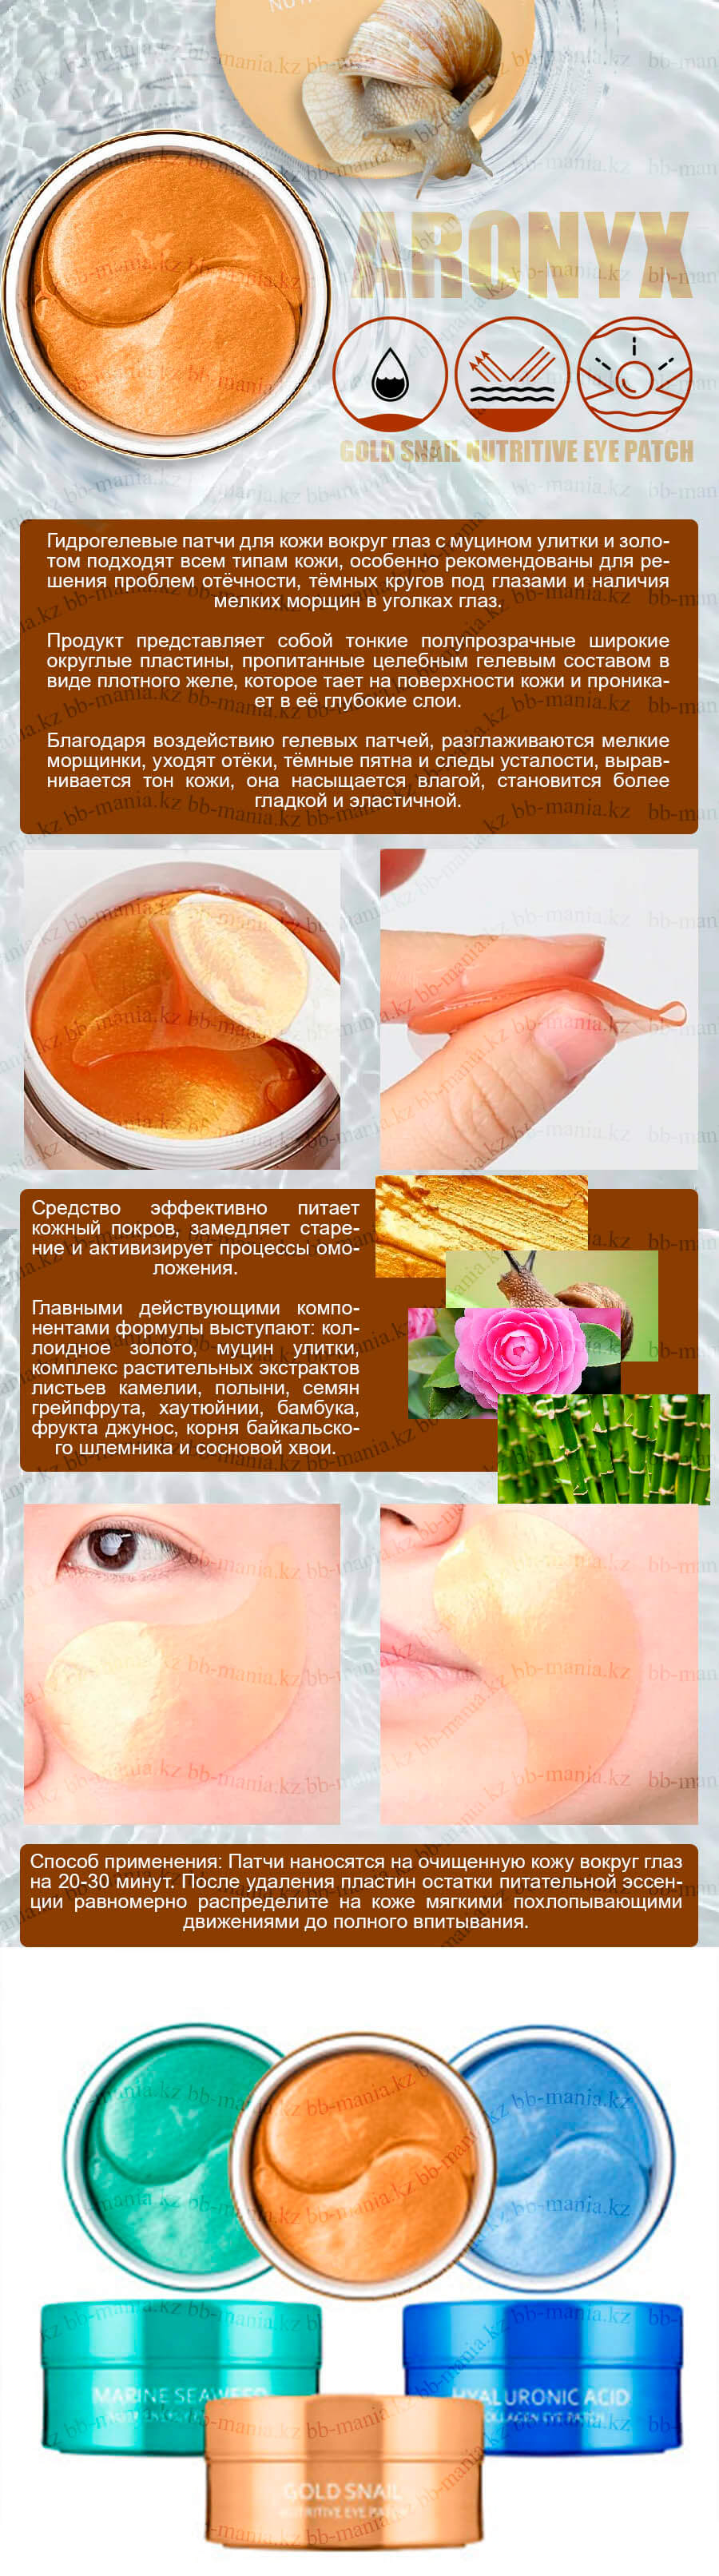 ARONYX Gold Snail Nutritive Eye Patch [Medi Flower]